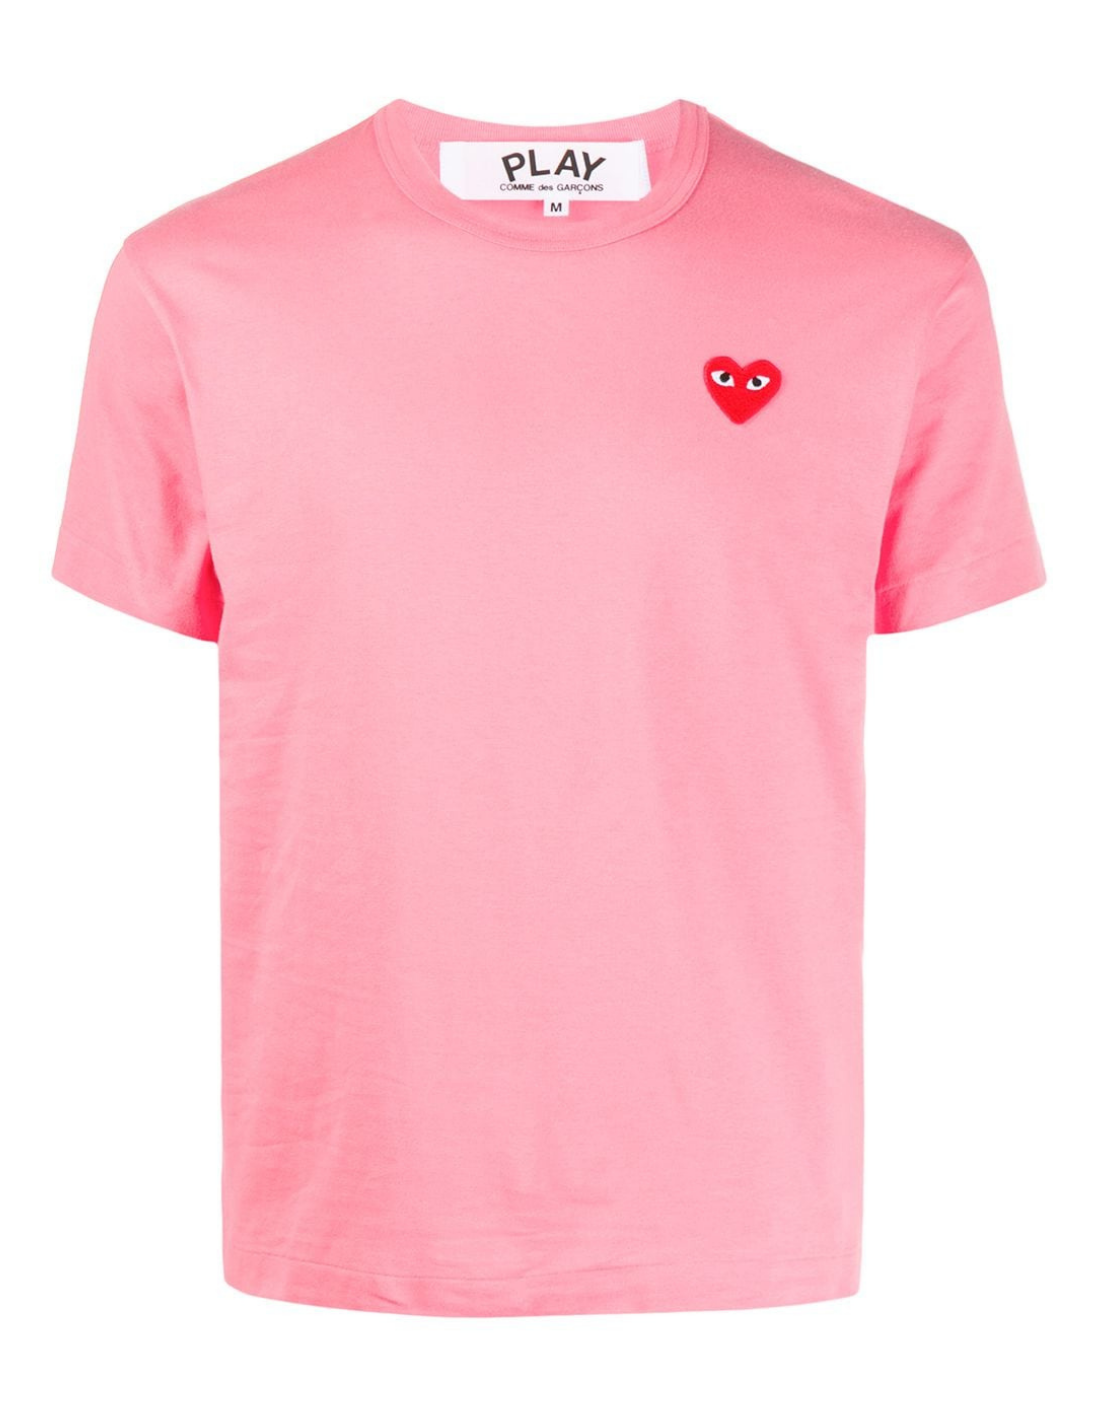 længes efter ål Krønike T-shirt rose avec coeur rouge COMME DES GARÇONS PLAY mixte.